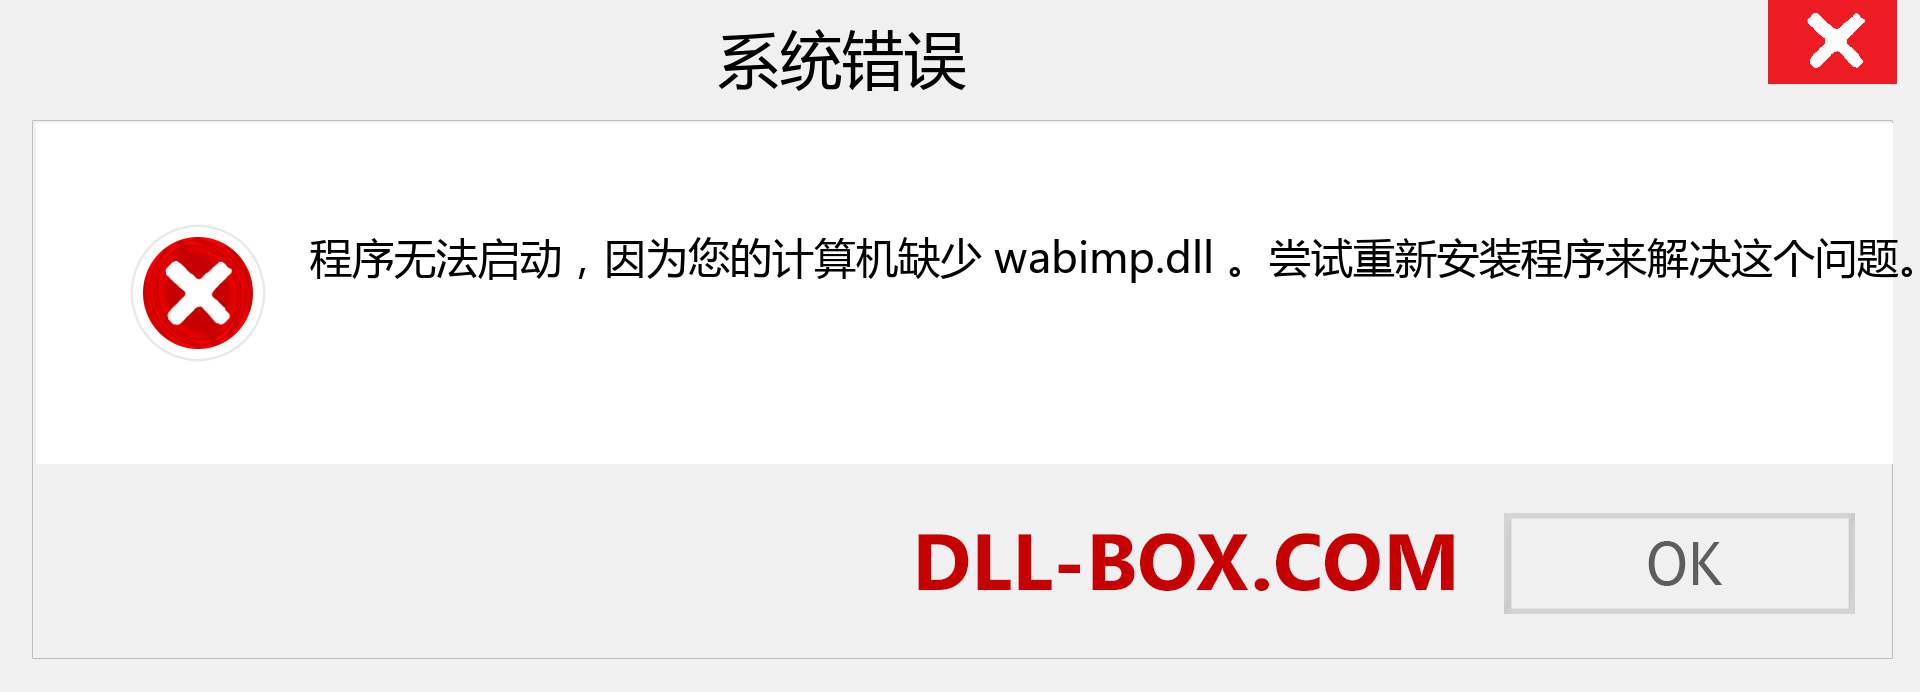 wabimp.dll 文件丢失？。 适用于 Windows 7、8、10 的下载 - 修复 Windows、照片、图像上的 wabimp dll 丢失错误